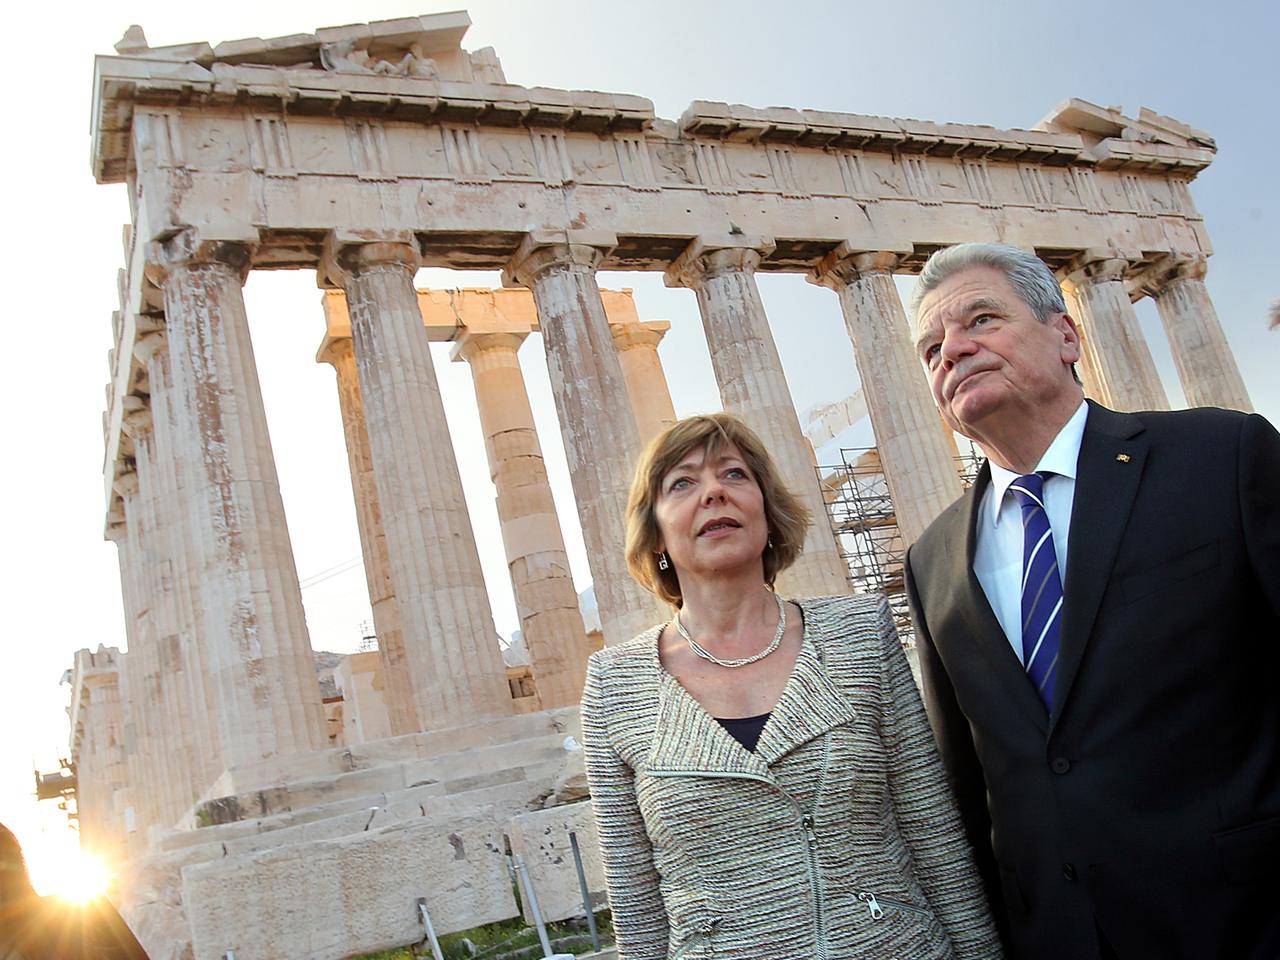 Bundespräsident Joachim Gauck und seine Lebensgefährtin Daniela Schadt besichtigen am 05.03.2014 in Athen die Akropolis. Das deutsche Staatsoberhaupt hält sich zu einem dreitägigen Besuch in Griechenland auf.